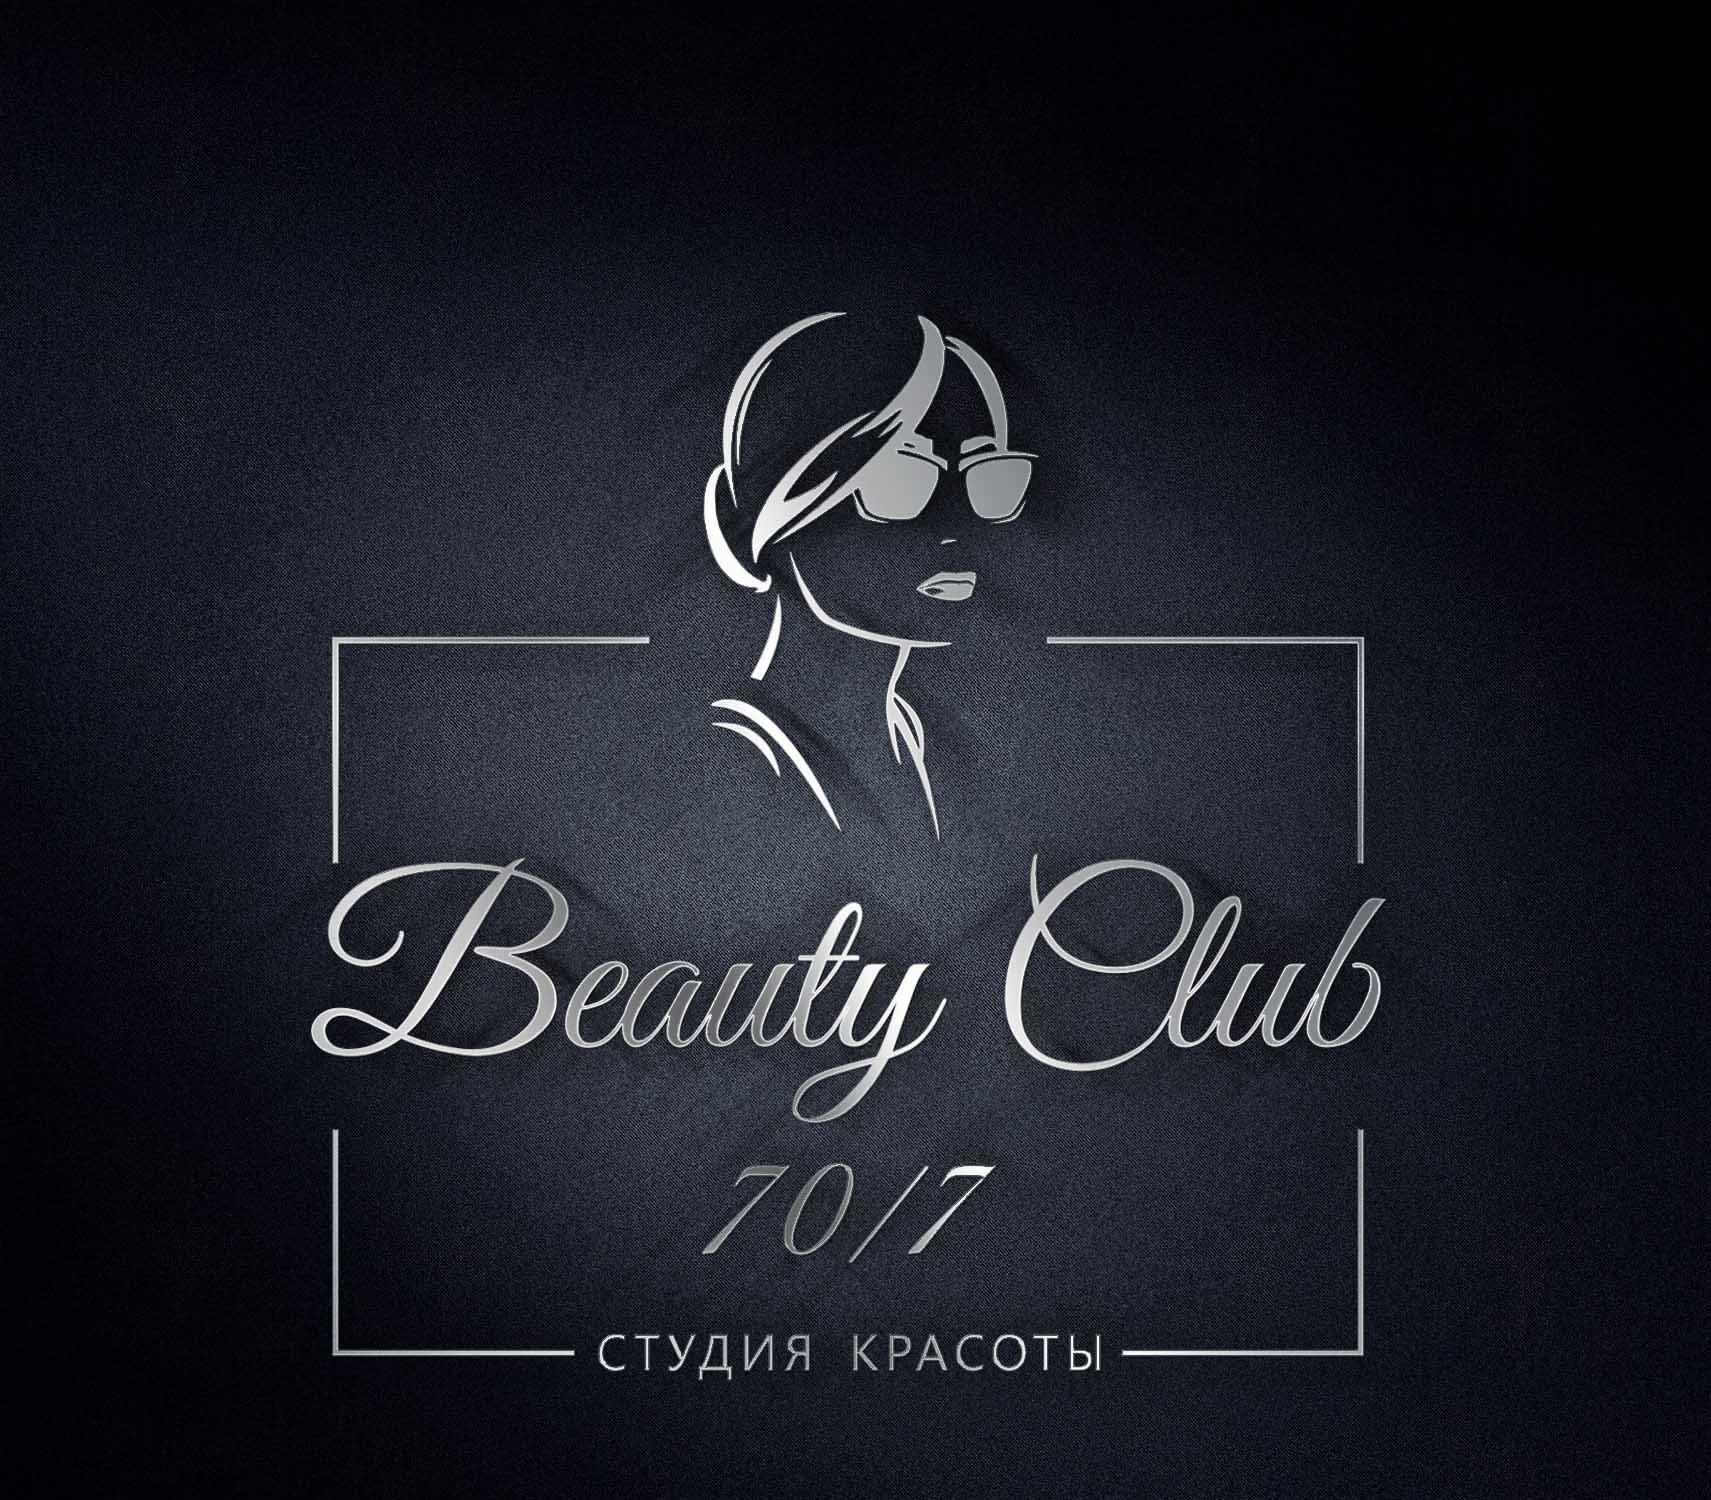 Beautiful club. Beauty Club. Бьюти клаб картинки. Lume 21 Beauty Club логотип. SF Beauty Club студия Майкоп.